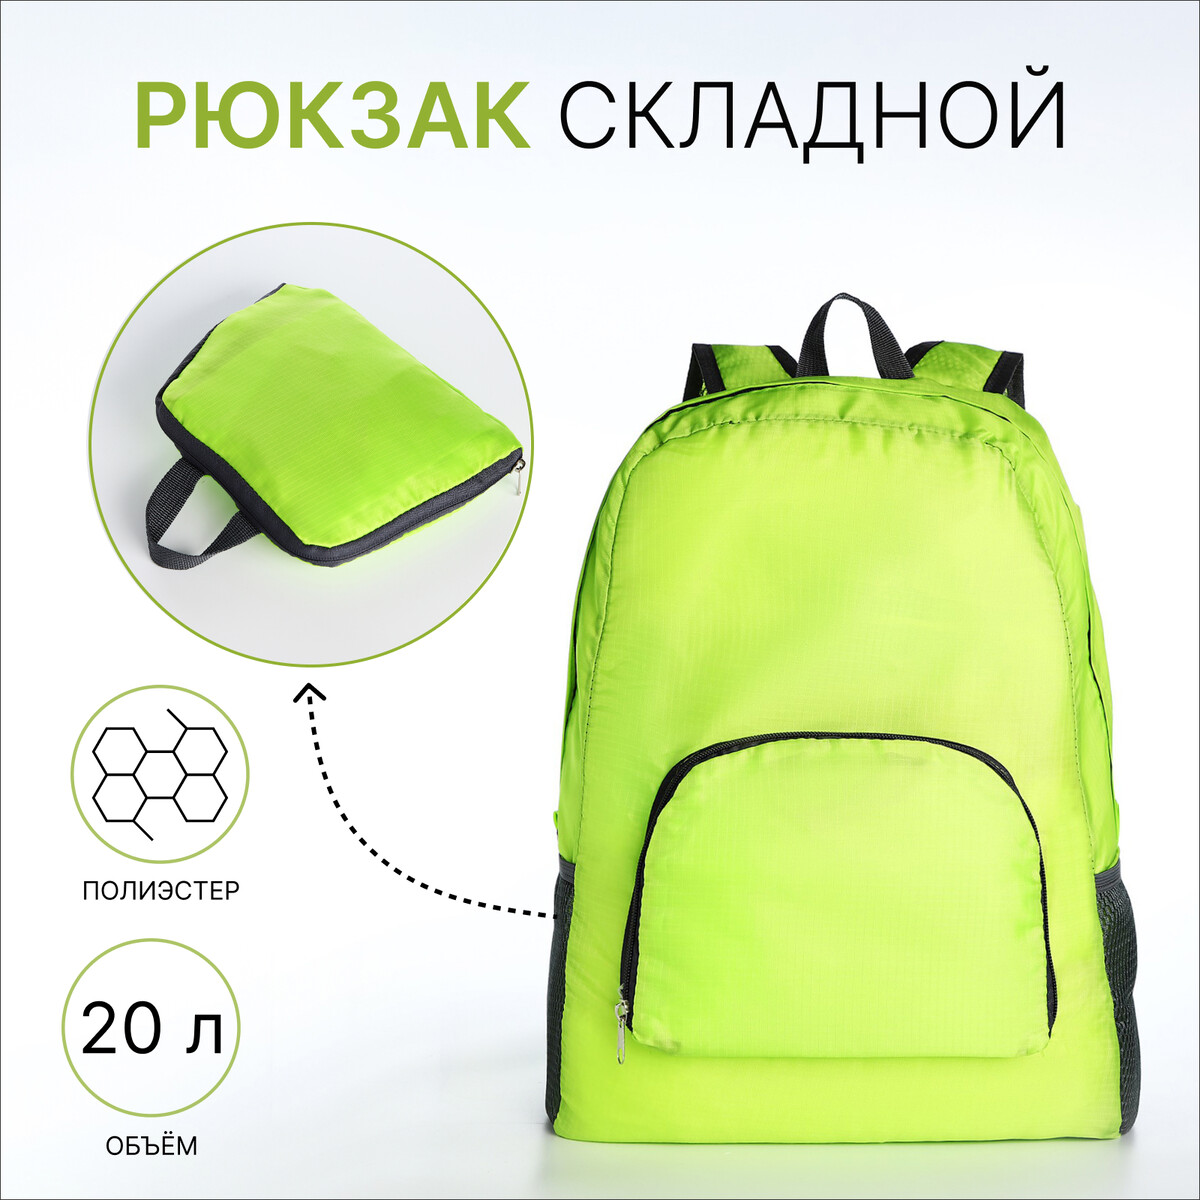 Рюкзак складной, отдел на молнии, наружный карман, 2 боковых кармана, цвет зеленый рюкзак nonstopika action бирюзовый складной